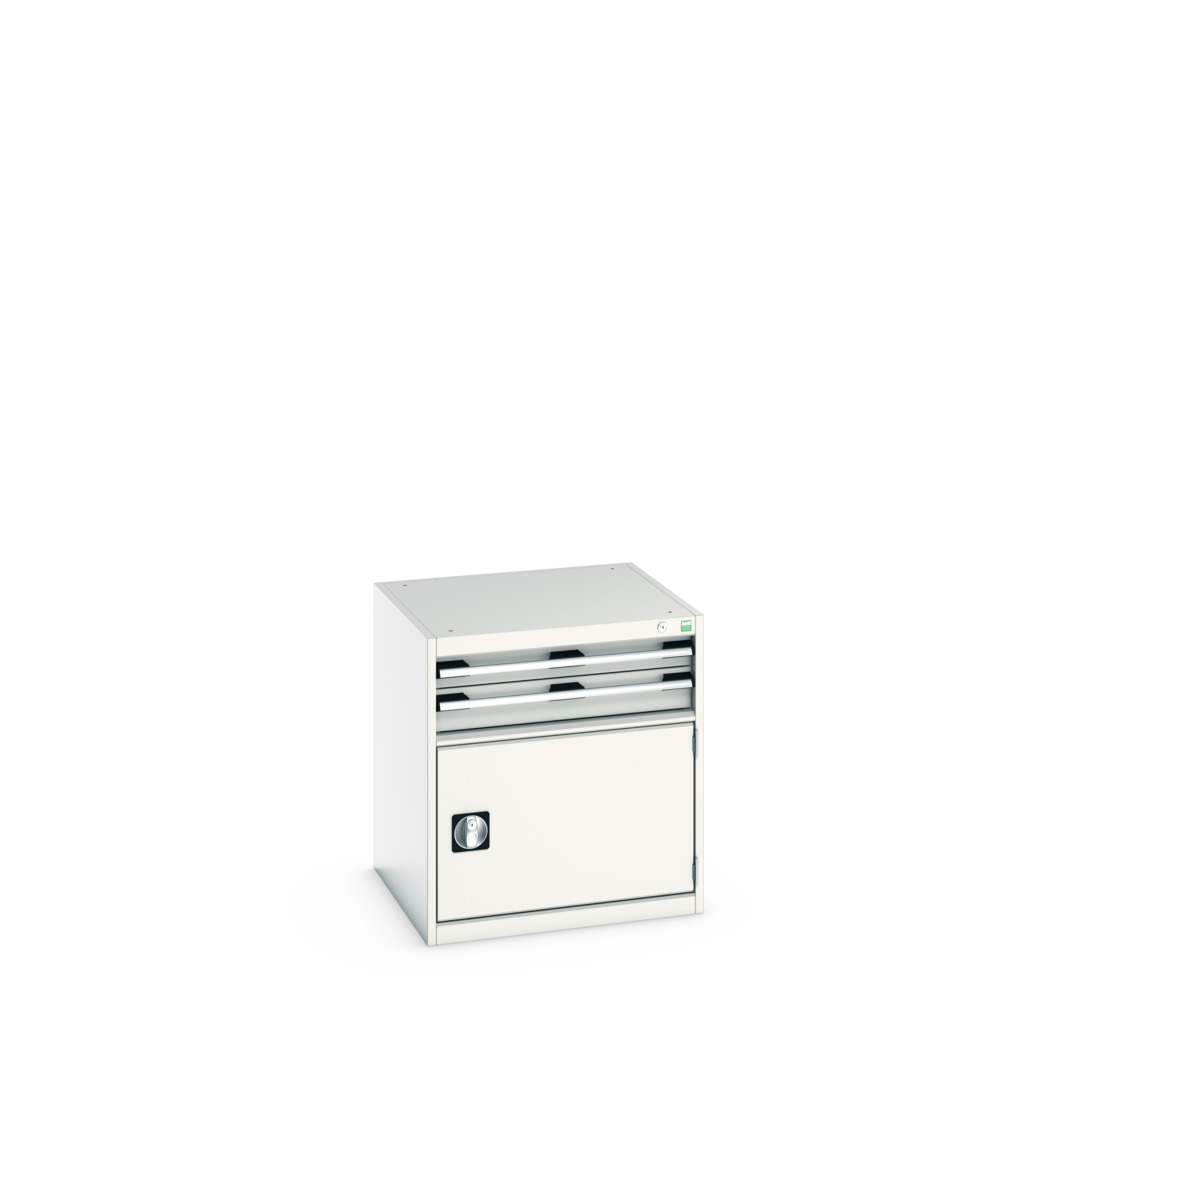 40019021.16V - cubio drawer-door cabinet